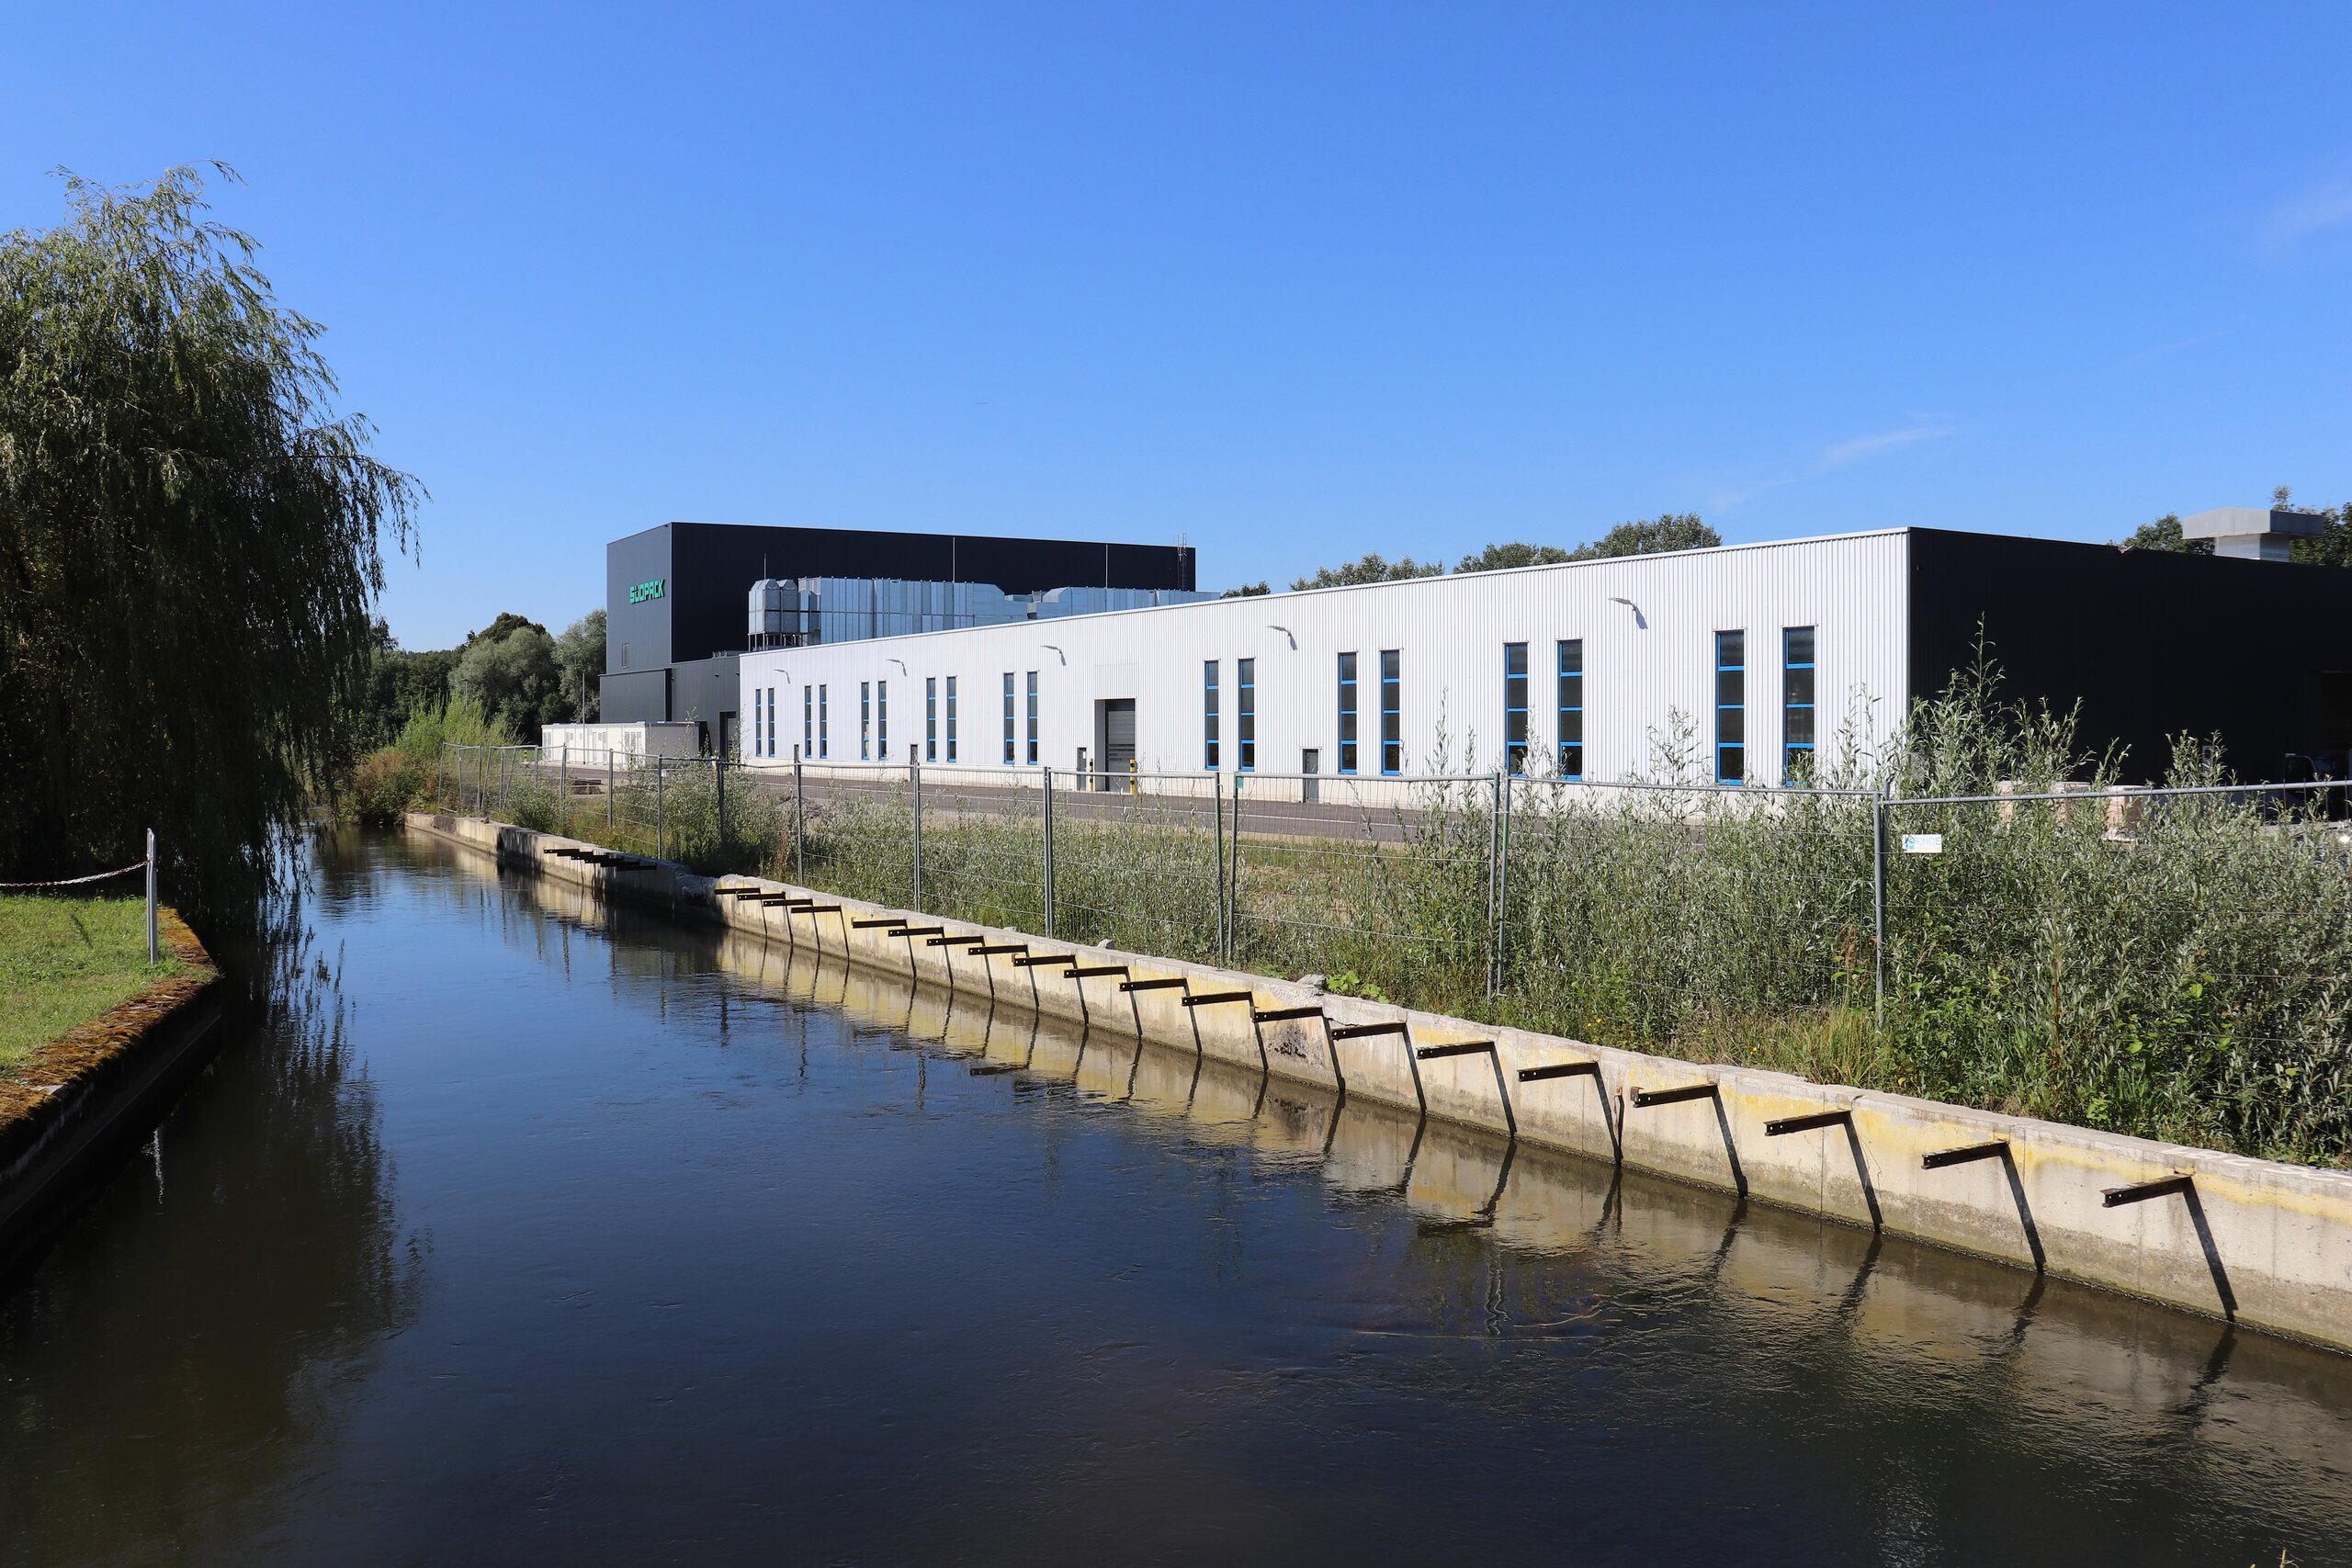 Bild eines modernen Compoundierungszentrums, das fortschrittliche Technologien in Schwendi, Deutschland, einsetzt, um hochwertige Produkte herzustellen.